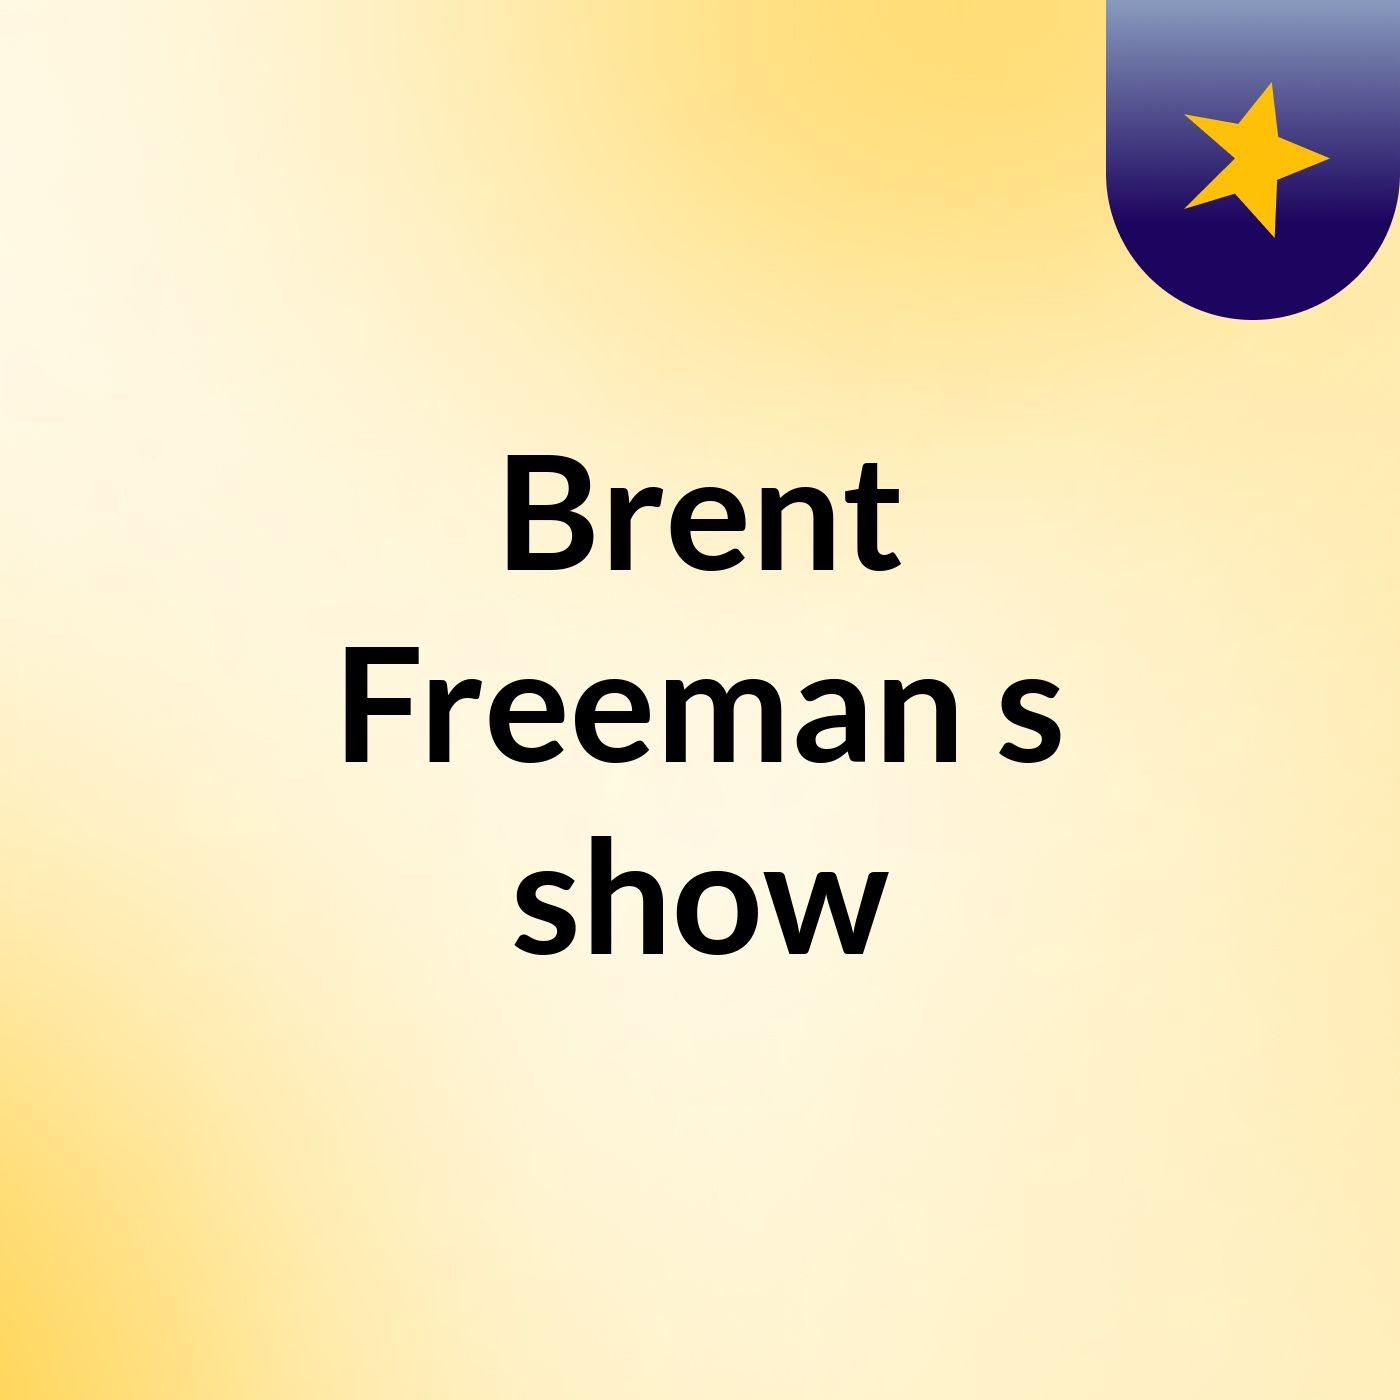 Episode 28 - Brent Freeman's show